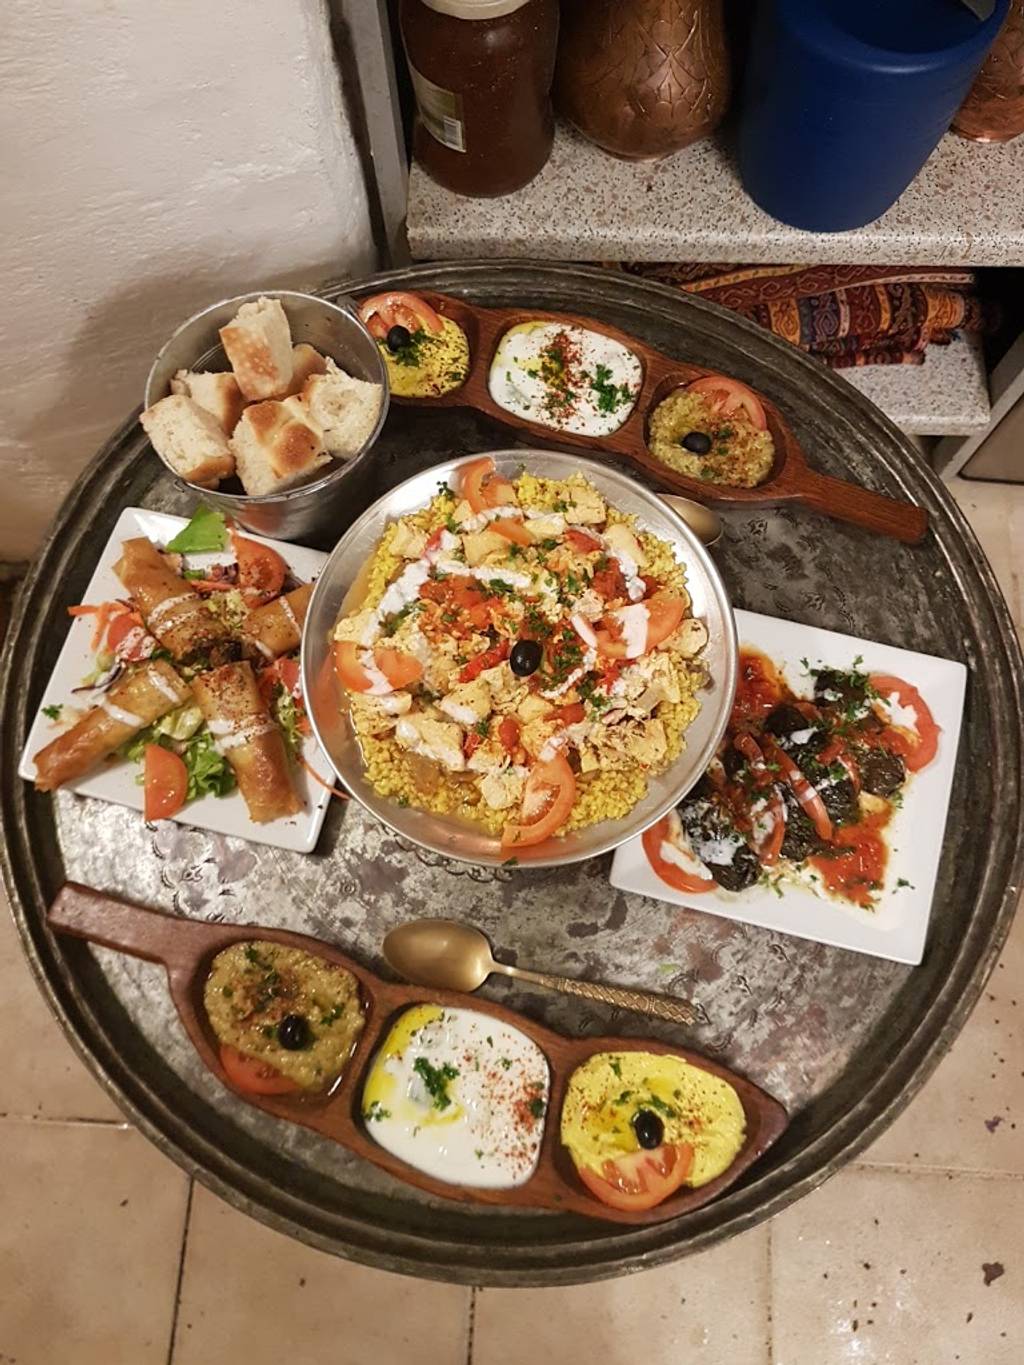 Ottoman Restaurant Méditerranéen Bordeaux - Dish Food Cuisine Meal Ingredient